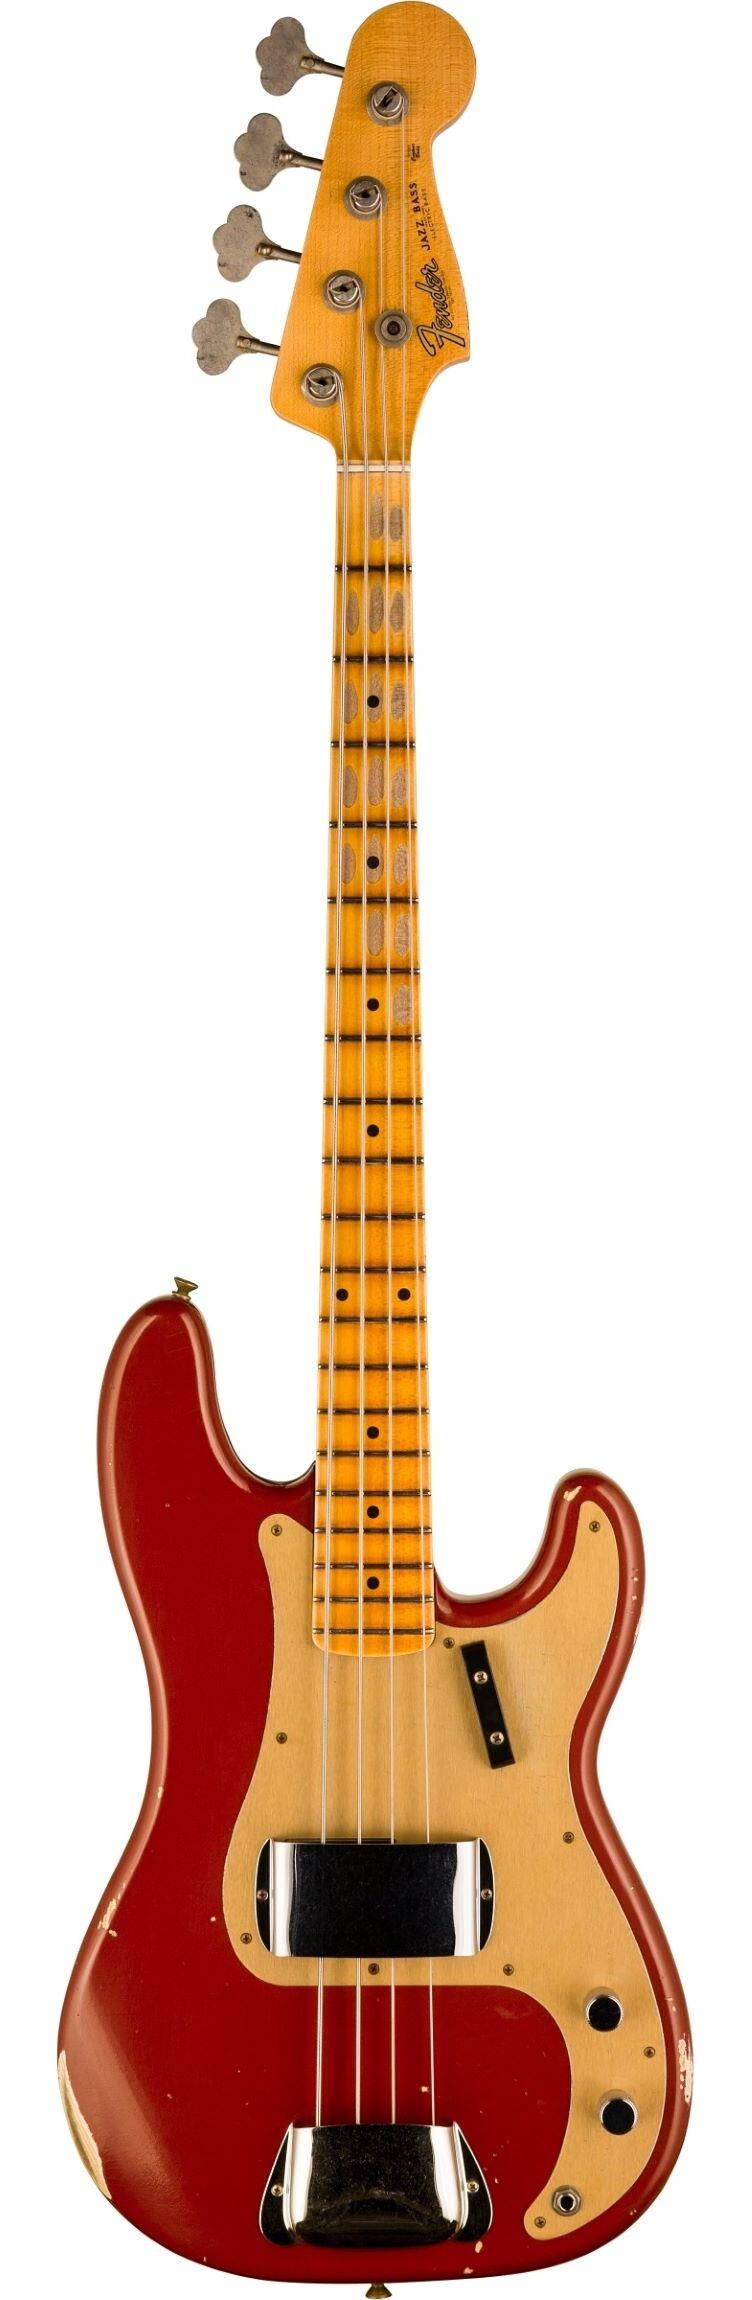 Fender Custom Shop Limited Edition 